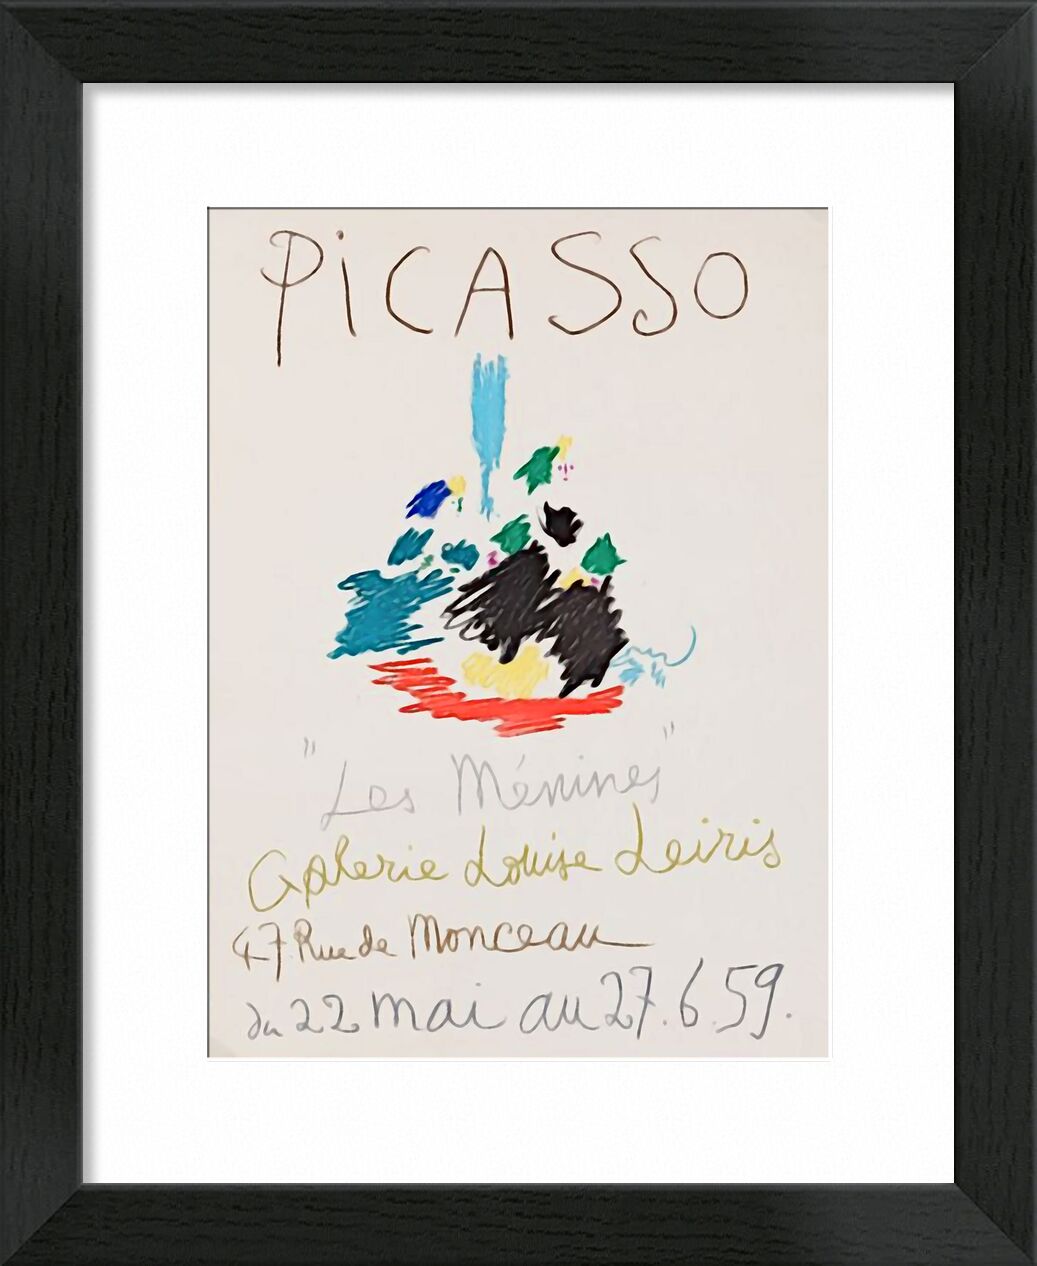 1959, Les Ménines - Picasso von Bildende Kunst, Prodi Art, Poster, Bleistiftzeichnung, Zeichnung, Picasso